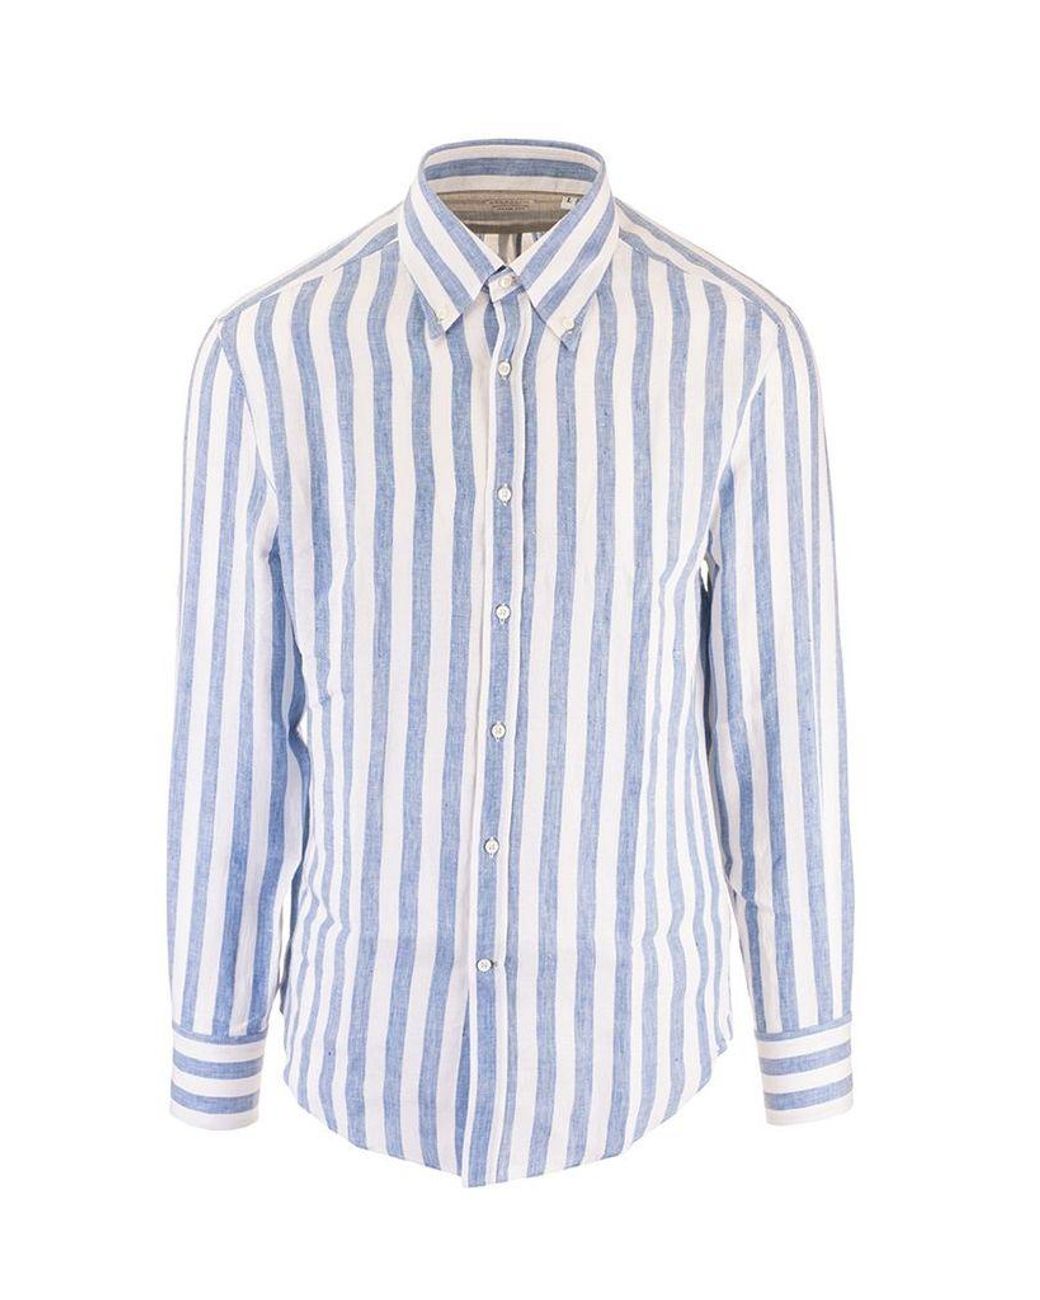 Brunello Cucinelli Men's Mw6081716c483 White Linen Shirt for Men - Lyst